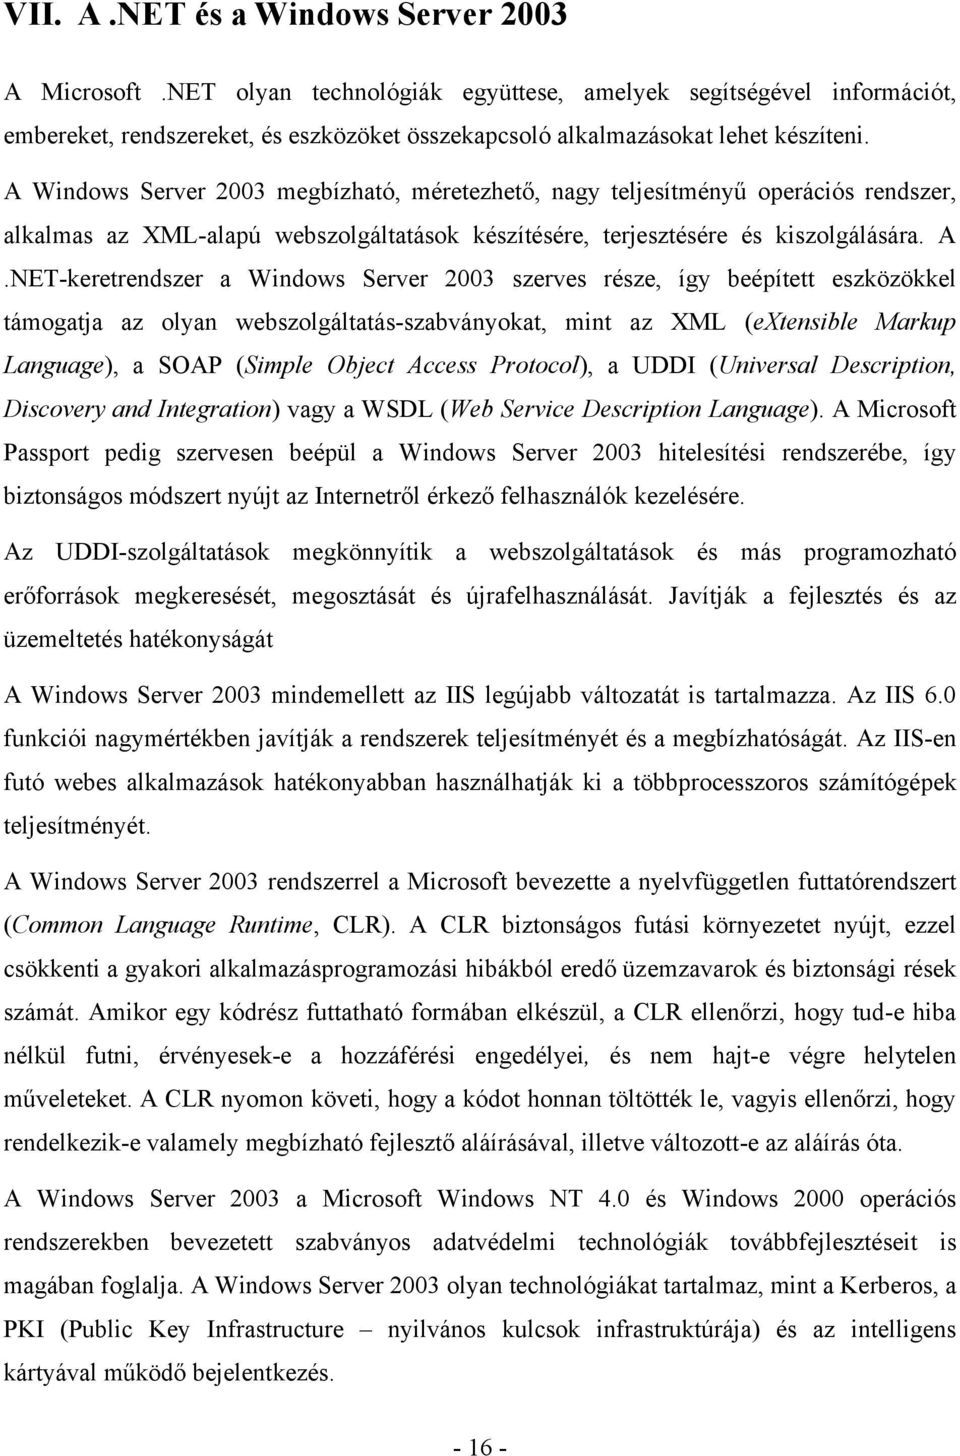 NET-keretrendszer a Windows Server 2003 szerves része, így beépített eszközökkel támogatja az olyan webszolgáltatás-szabványokat, mint az XML (extensible Markup Language), a SOAP (Simple Object